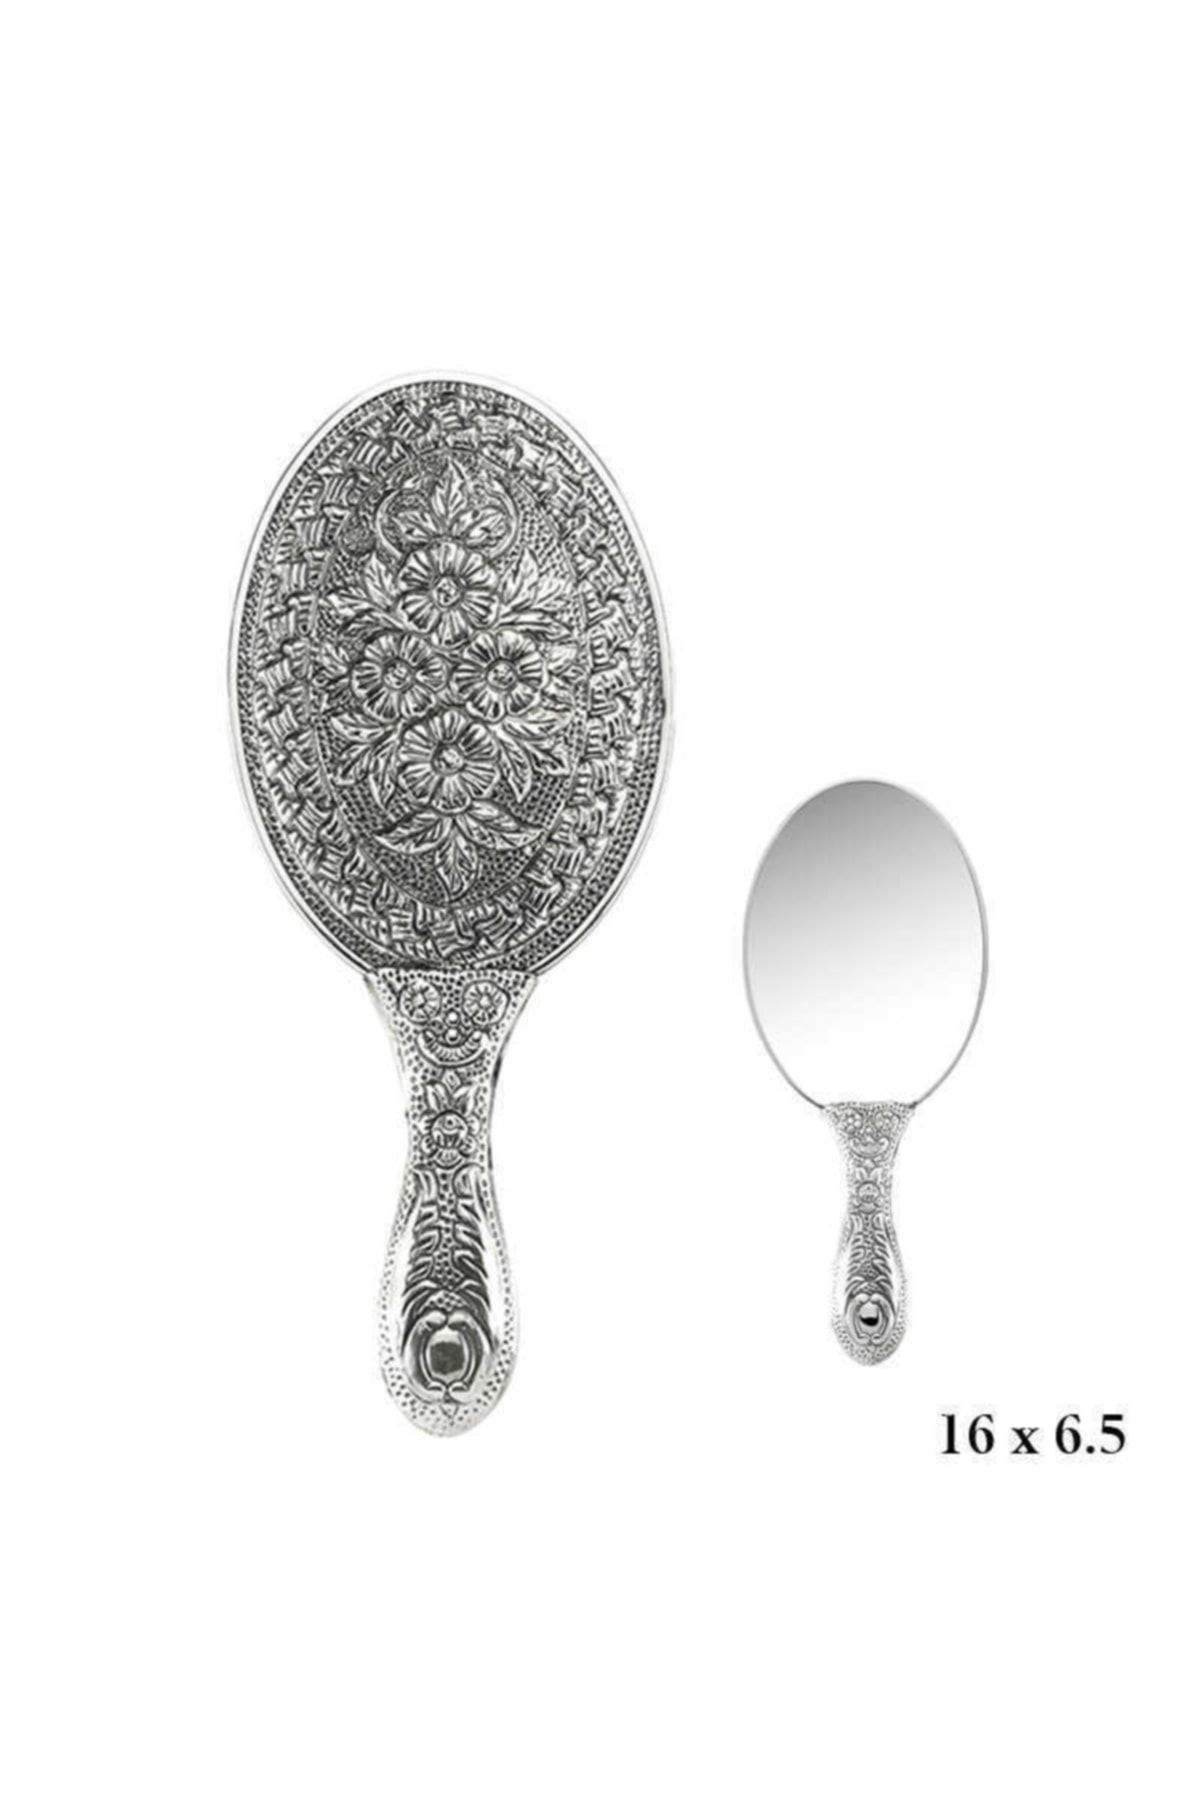 Gumush 925 Ayar Gümüş Papatya Desenli El Aynası